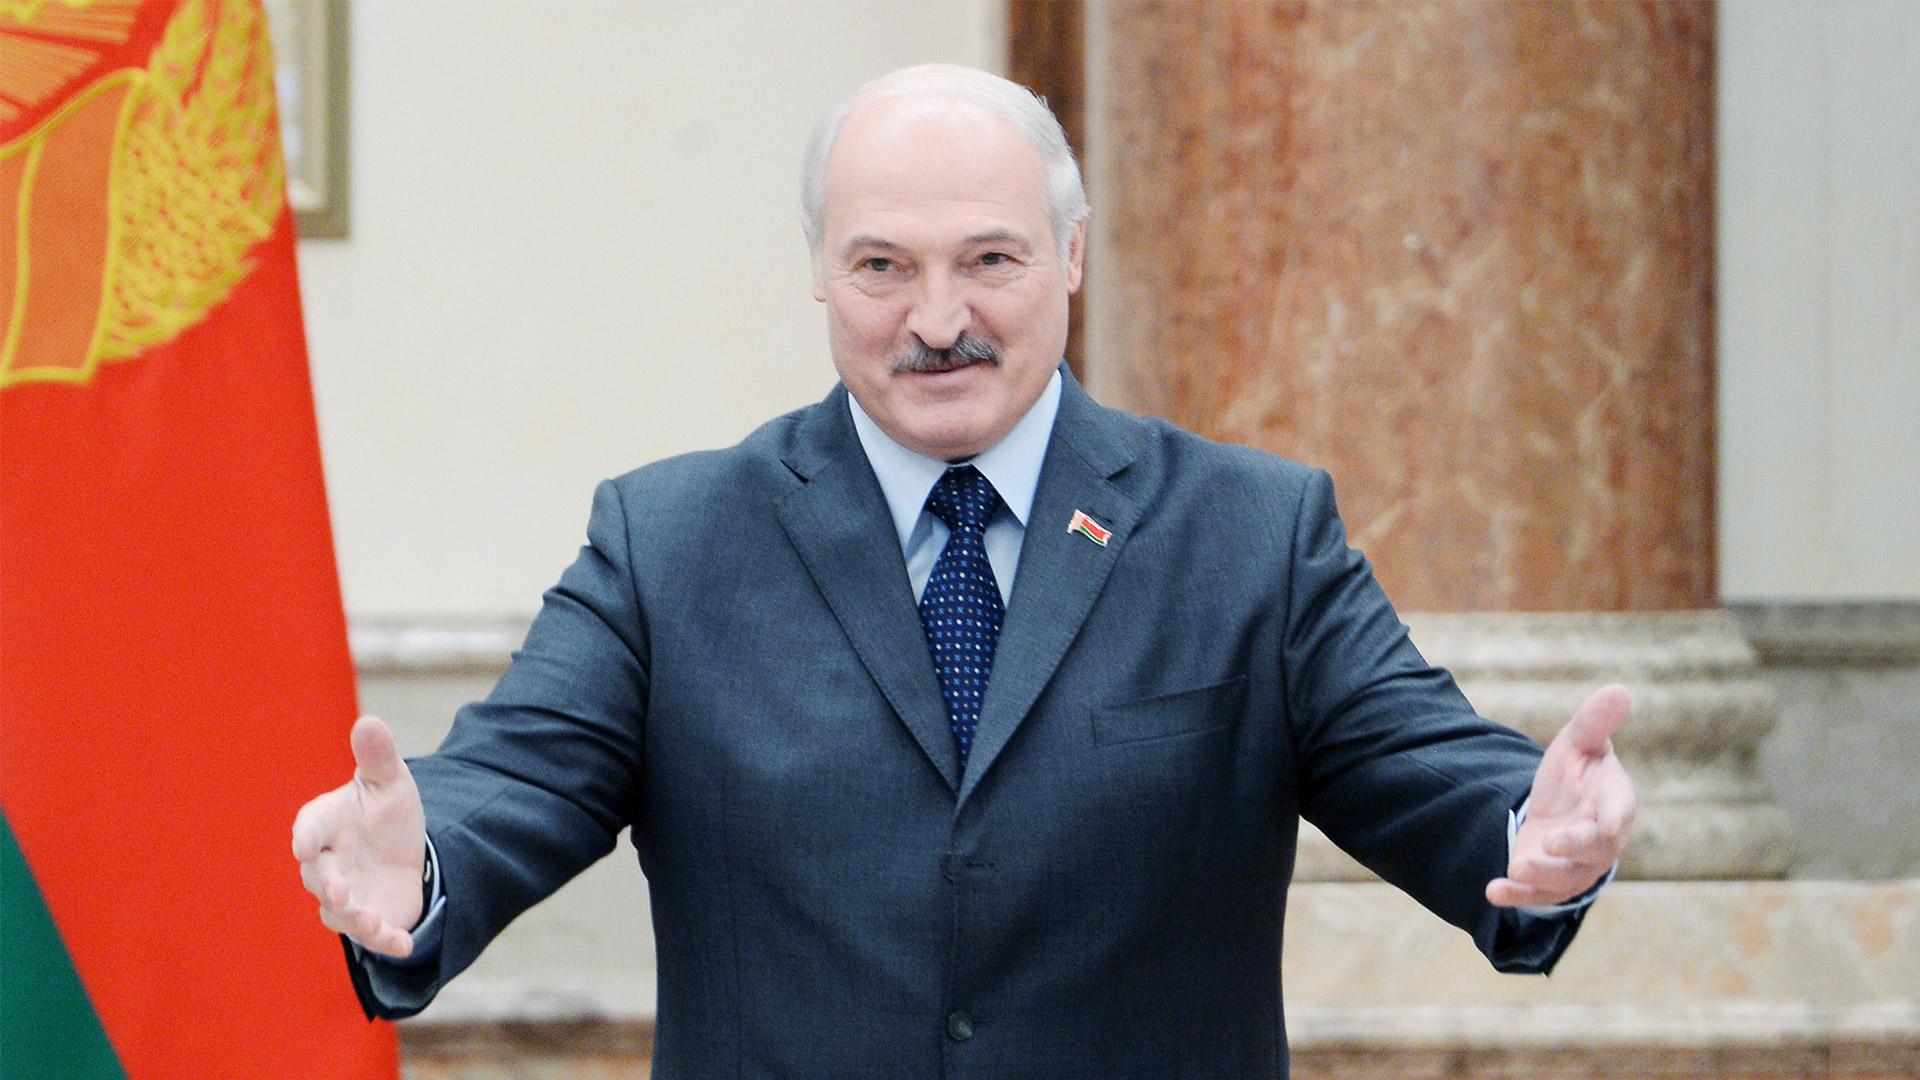 "Всех вылечит", - Лукашенко назвал универсальный метод борьбы с коронавирусом